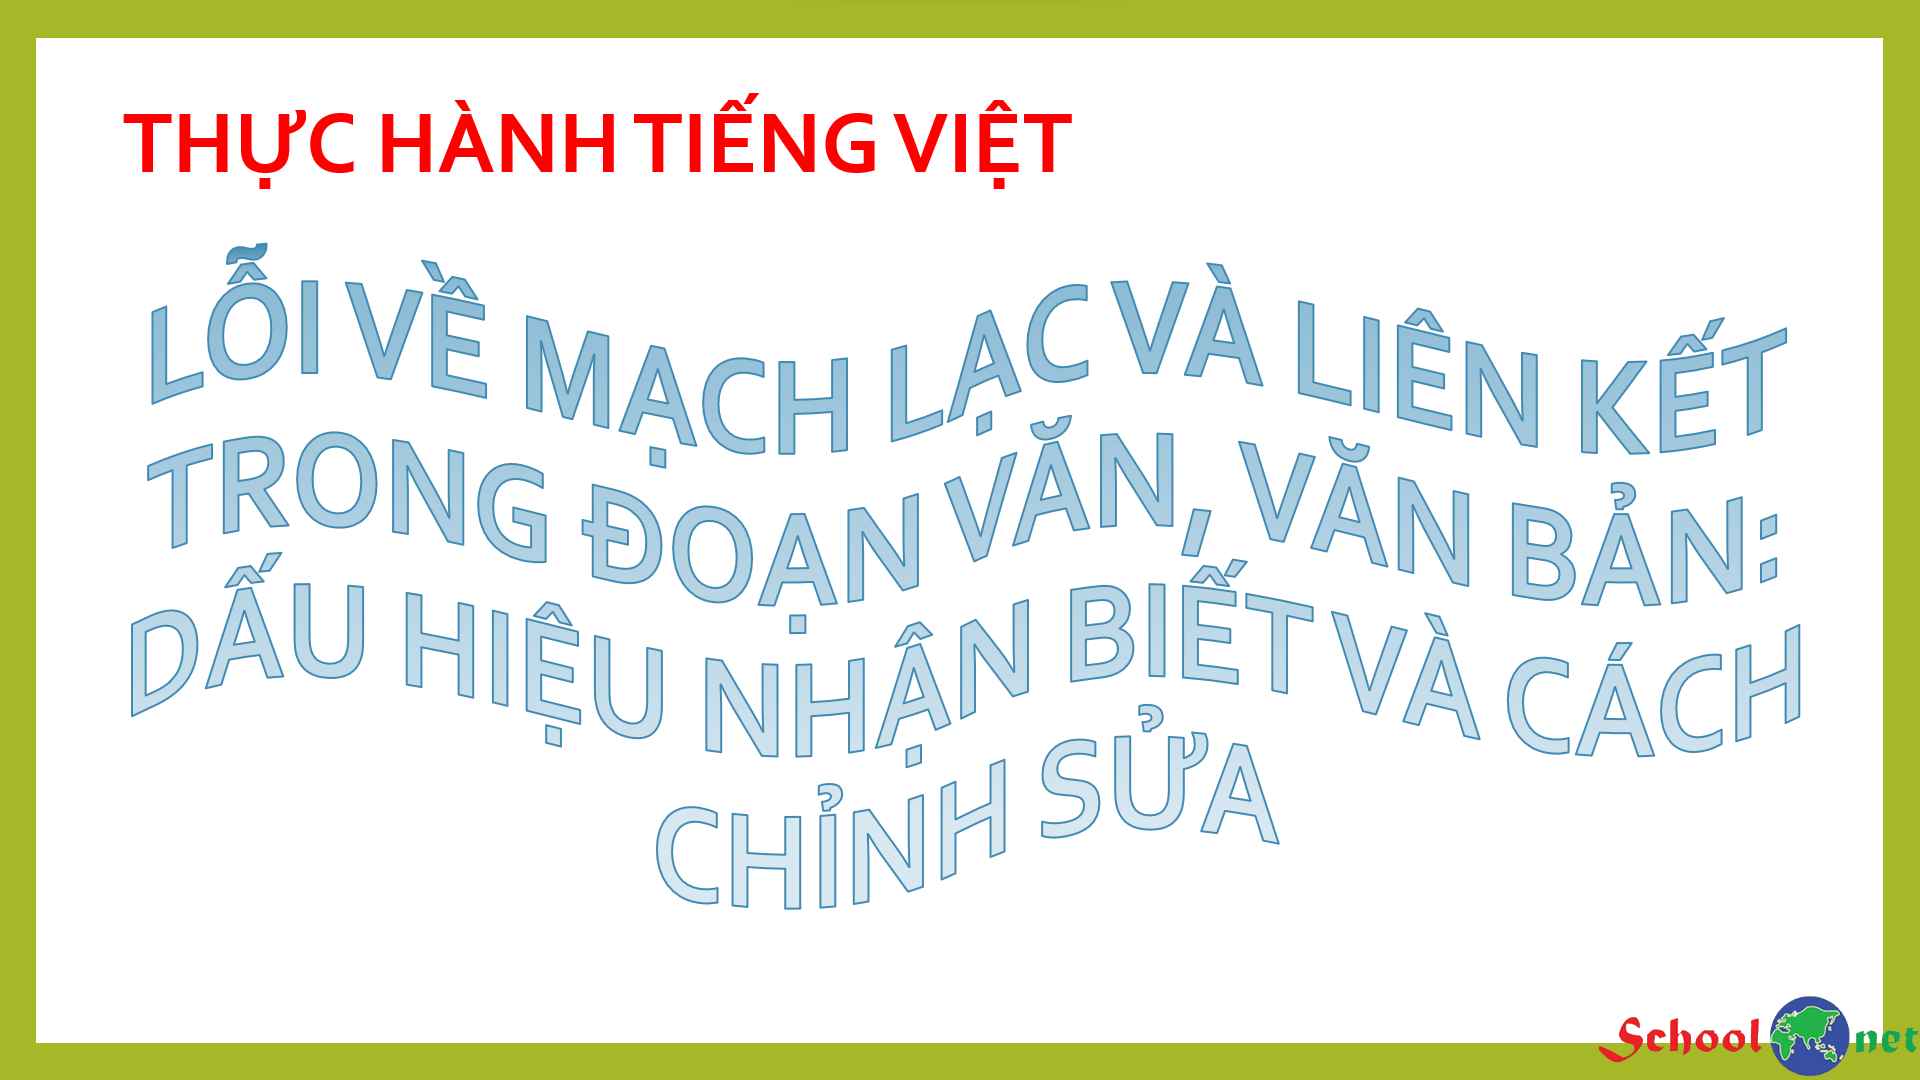 Bài 3: Thực hành tiếng Việt: Lỗi về liên kết và mạch lạc trong đoạn văn, văn bản: Dấu  hiệu nhận biết và cách chỉnh sửa - Bộ sách Kết nối tri thức với cuộc sống